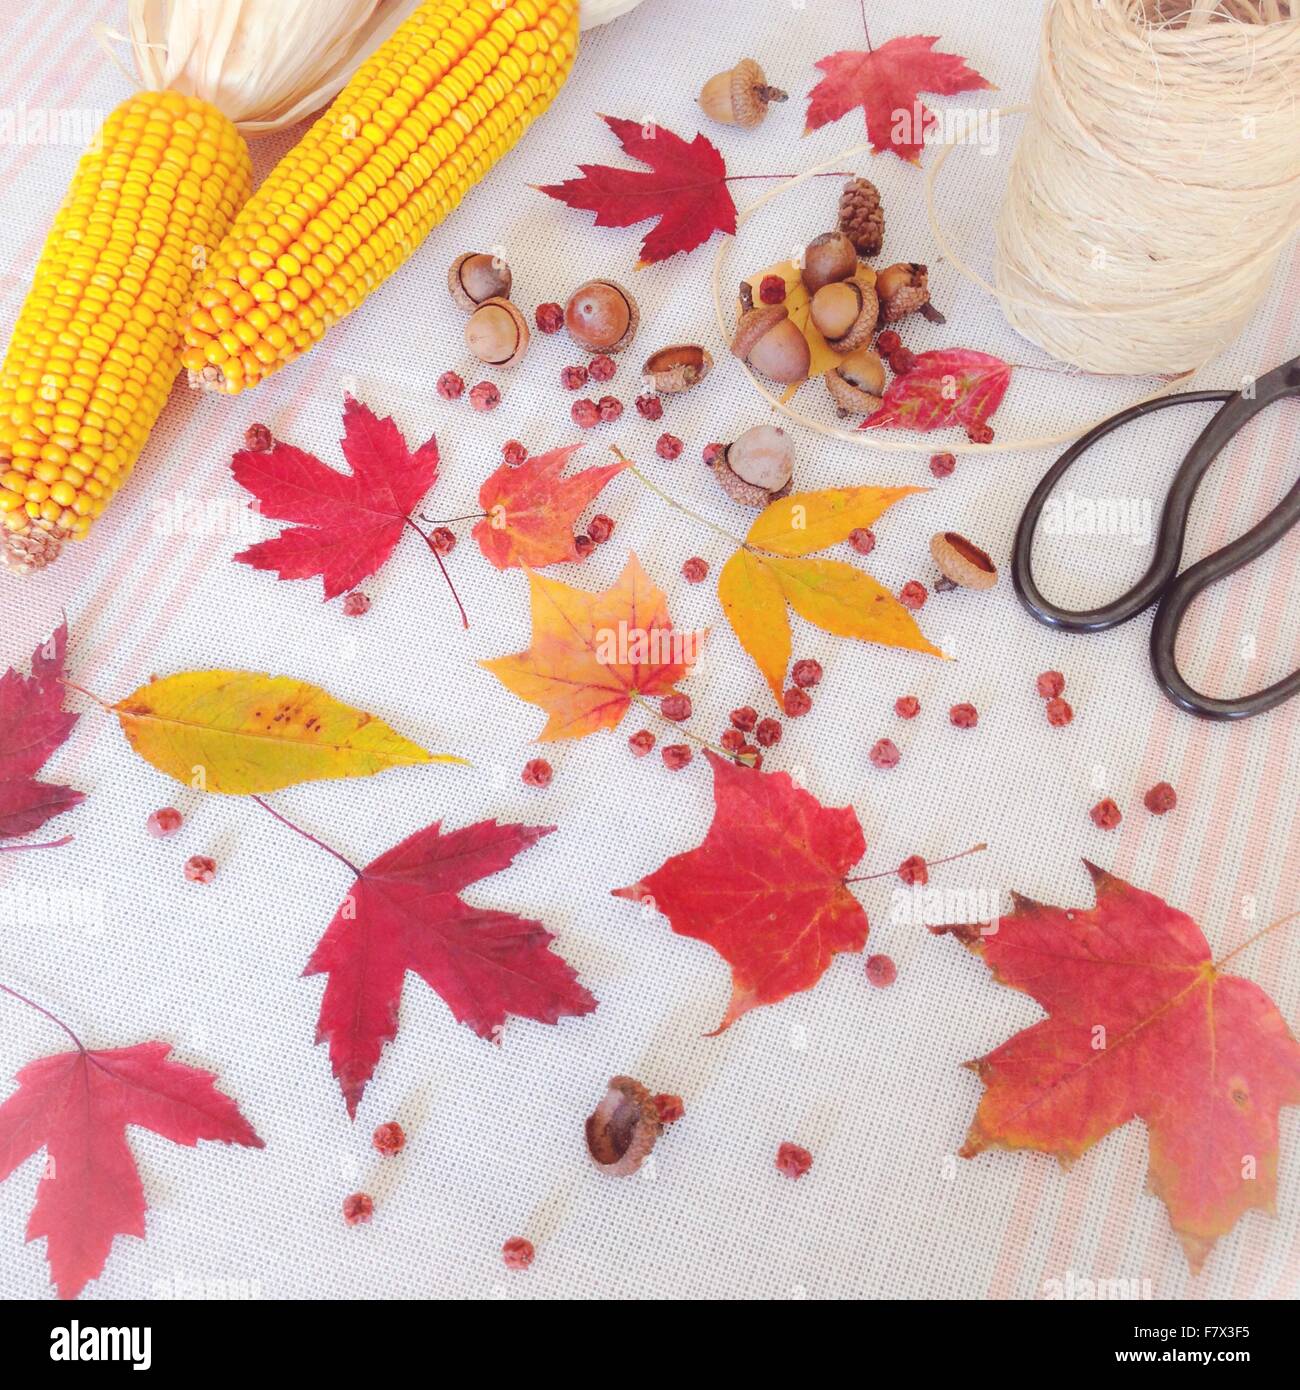 Herbst Anordnung der Ahorn-Blätter, Eicheln, Mais Maiskolben, Schnur und Schere Stockfoto